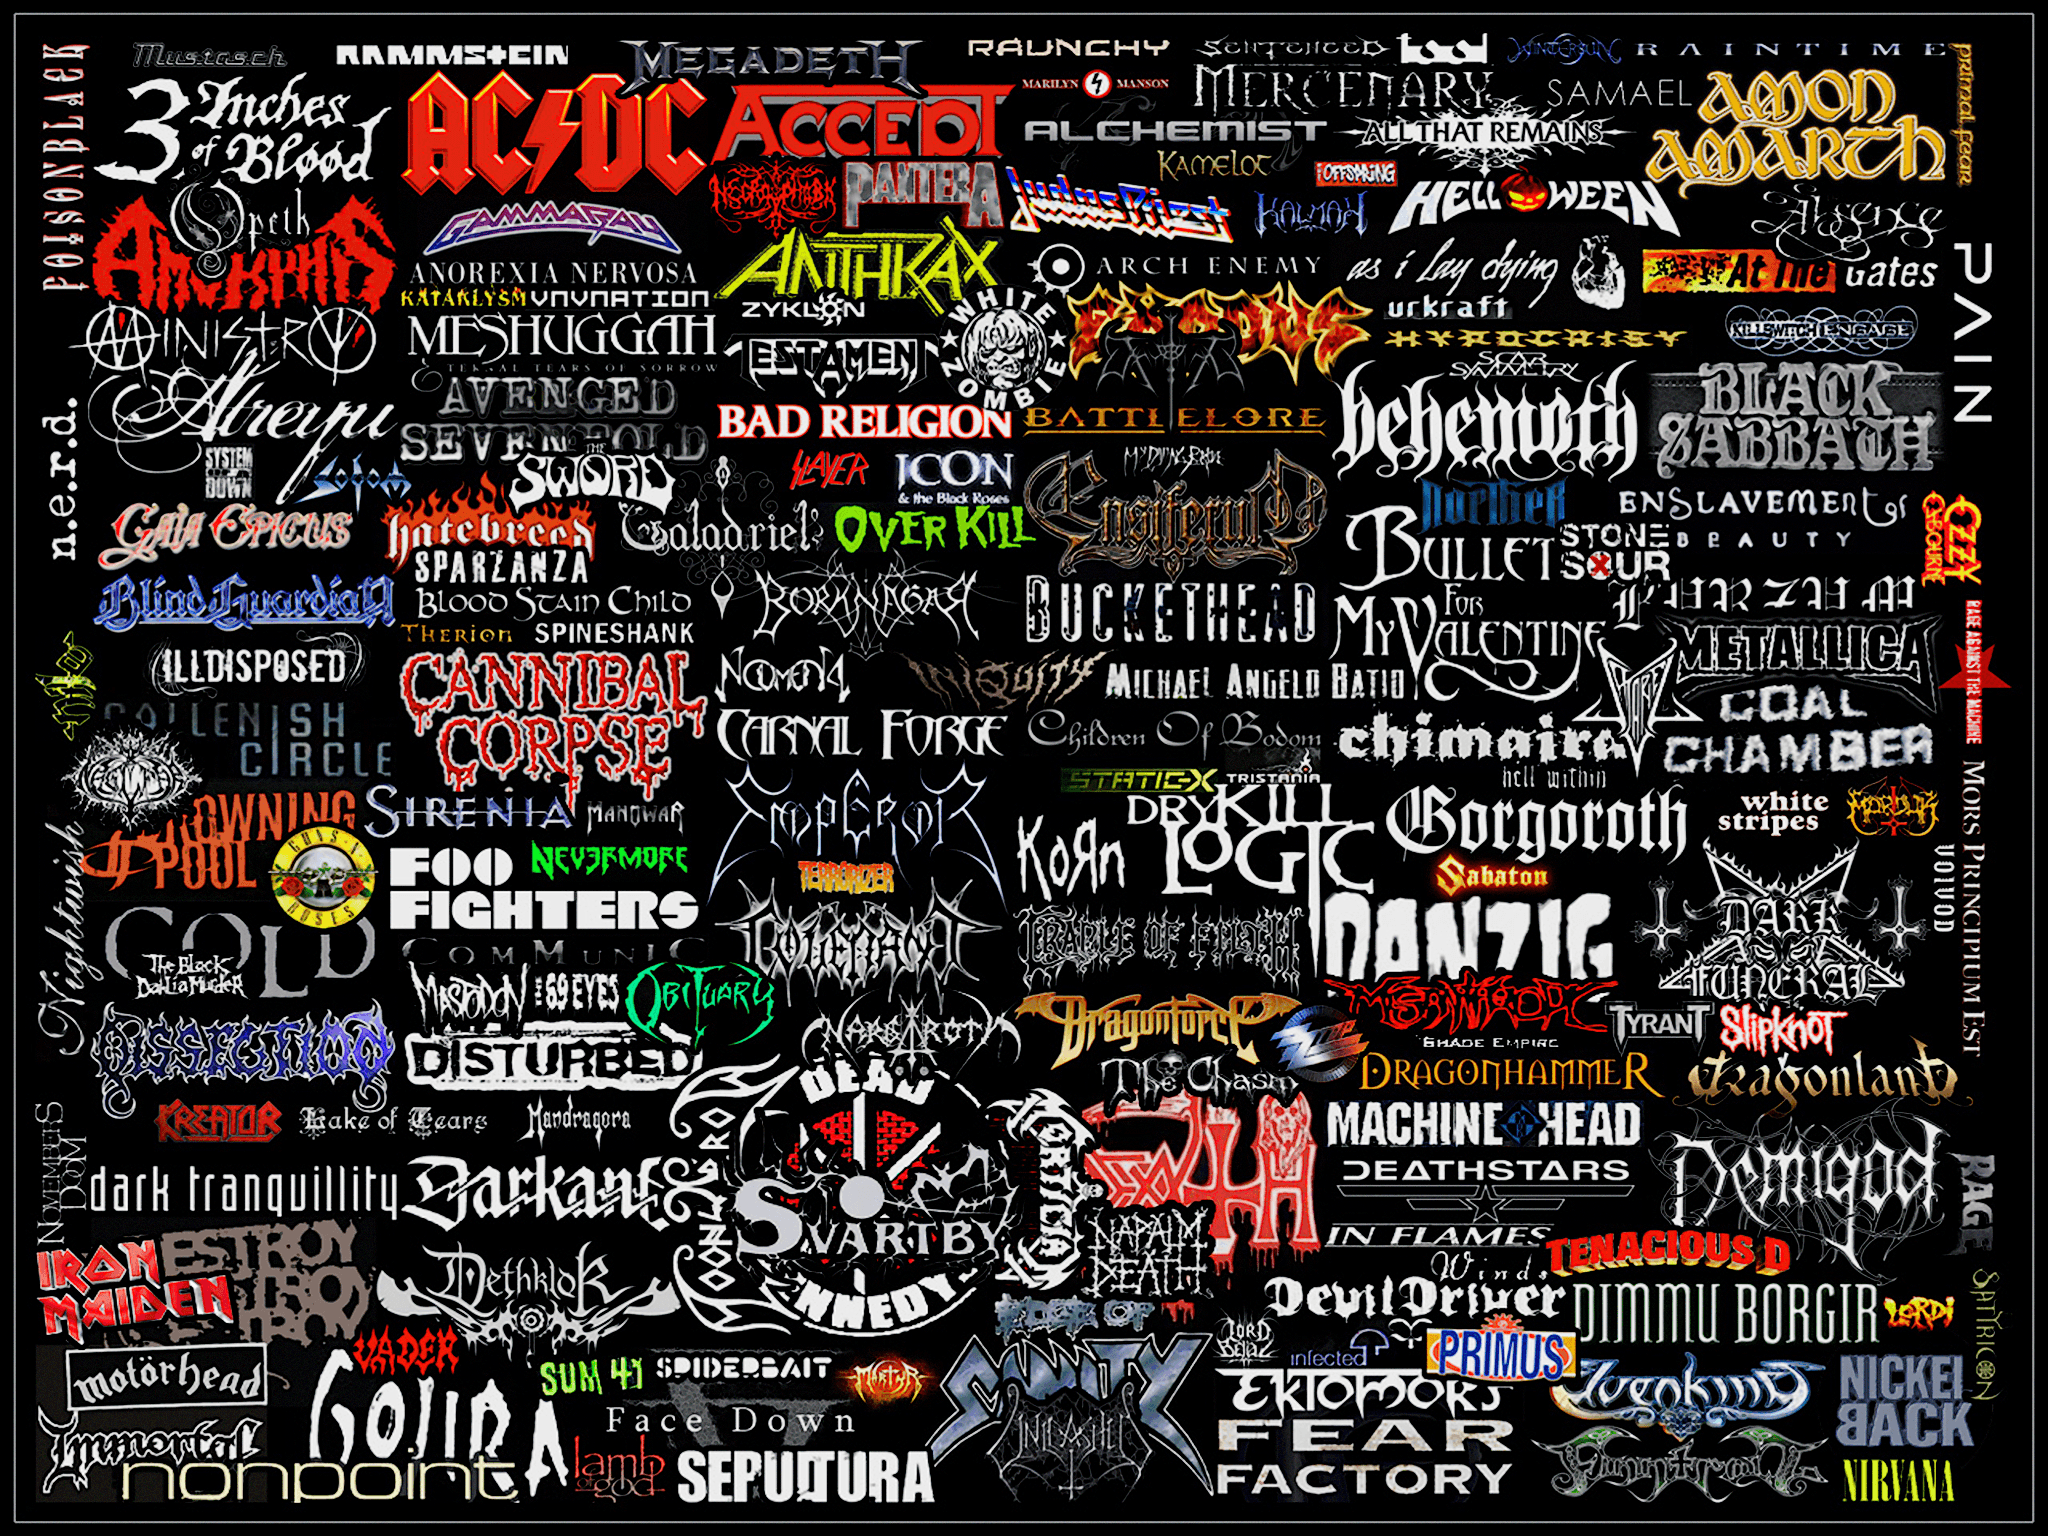 Heavy Metal Band Logo - MetalCaptcha: captcha with heavy metal band logos - boing - Boing ...